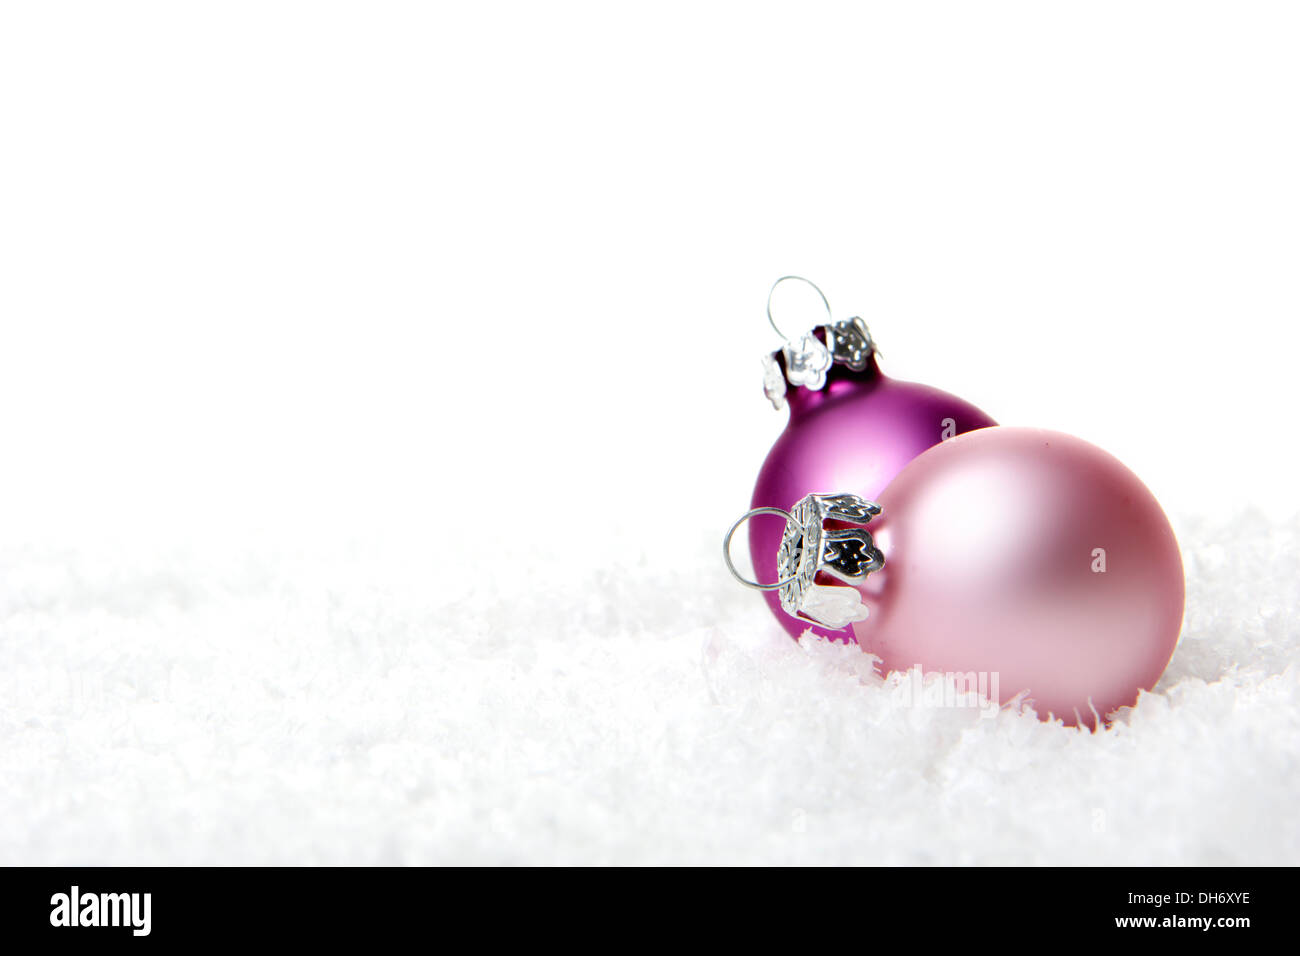 Ornamento de Navidad, bolas de navidad en rosa con fondo blanco nieve artificial Foto de stock